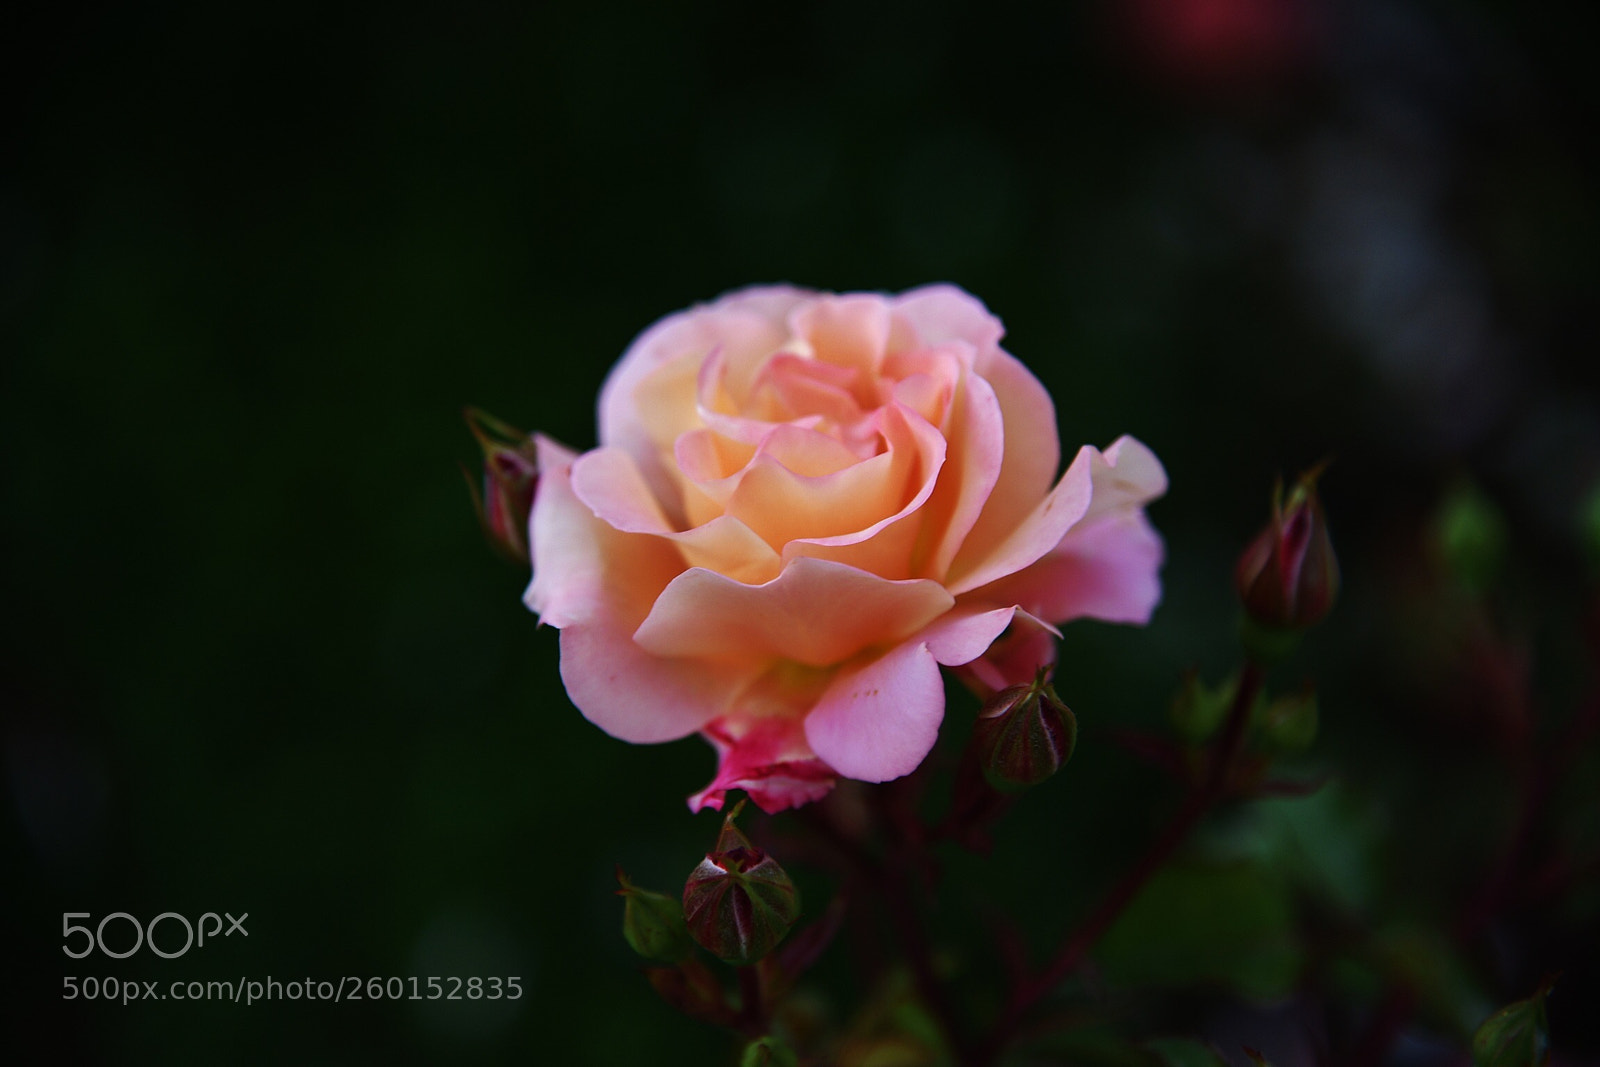 Nikon D750 sample photo. Pink rose photography